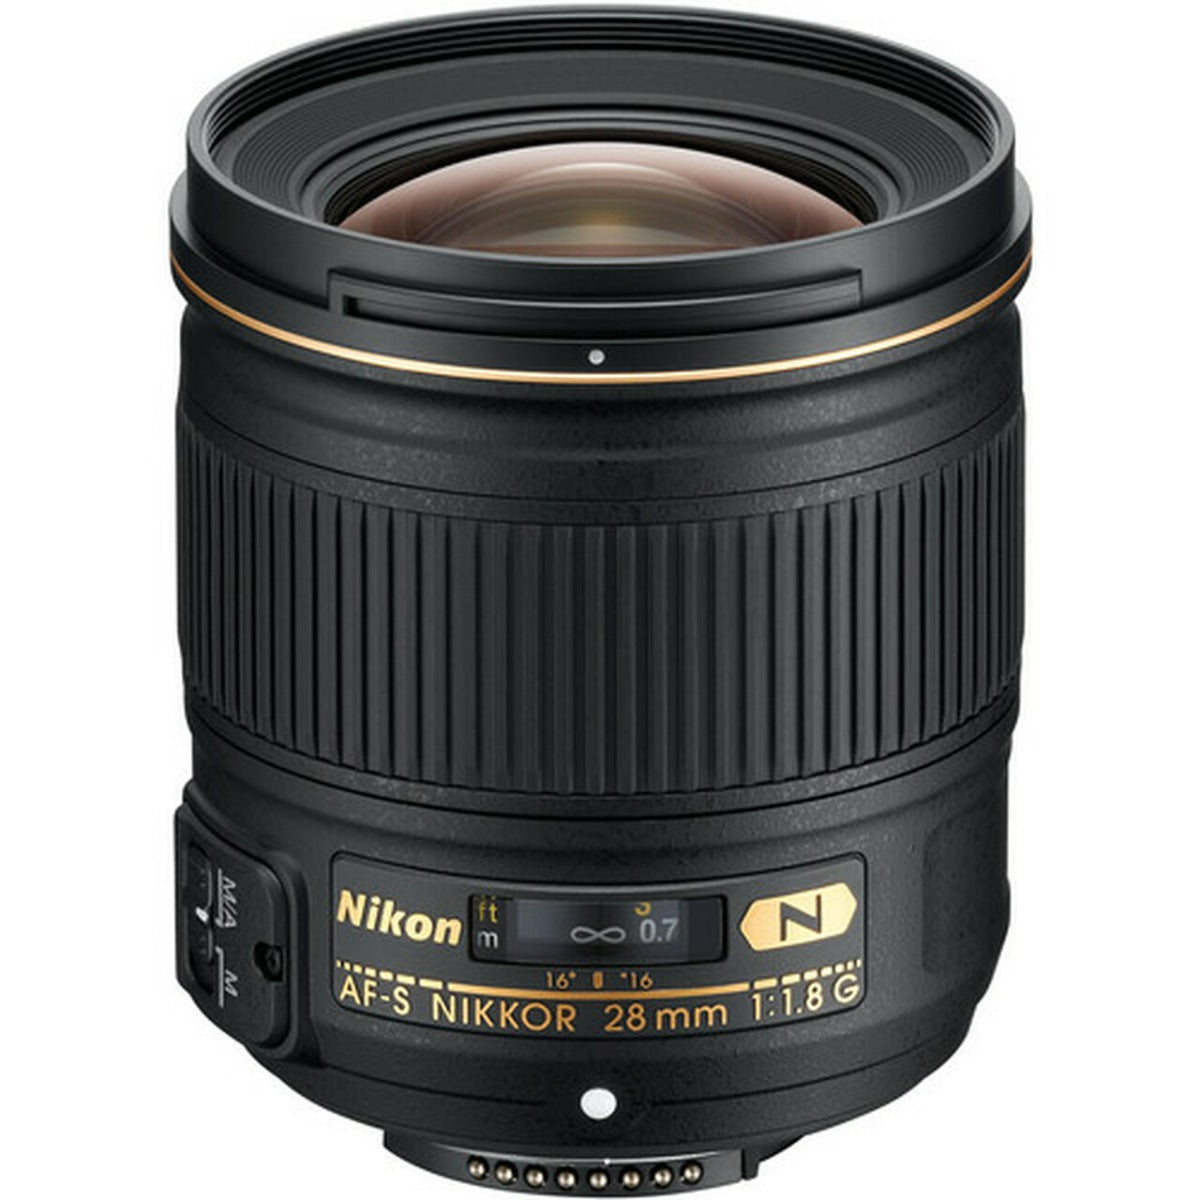 Product Image of Nikon 28mm f1.8 G AF-S NIKKOR wide-angle prime Lens